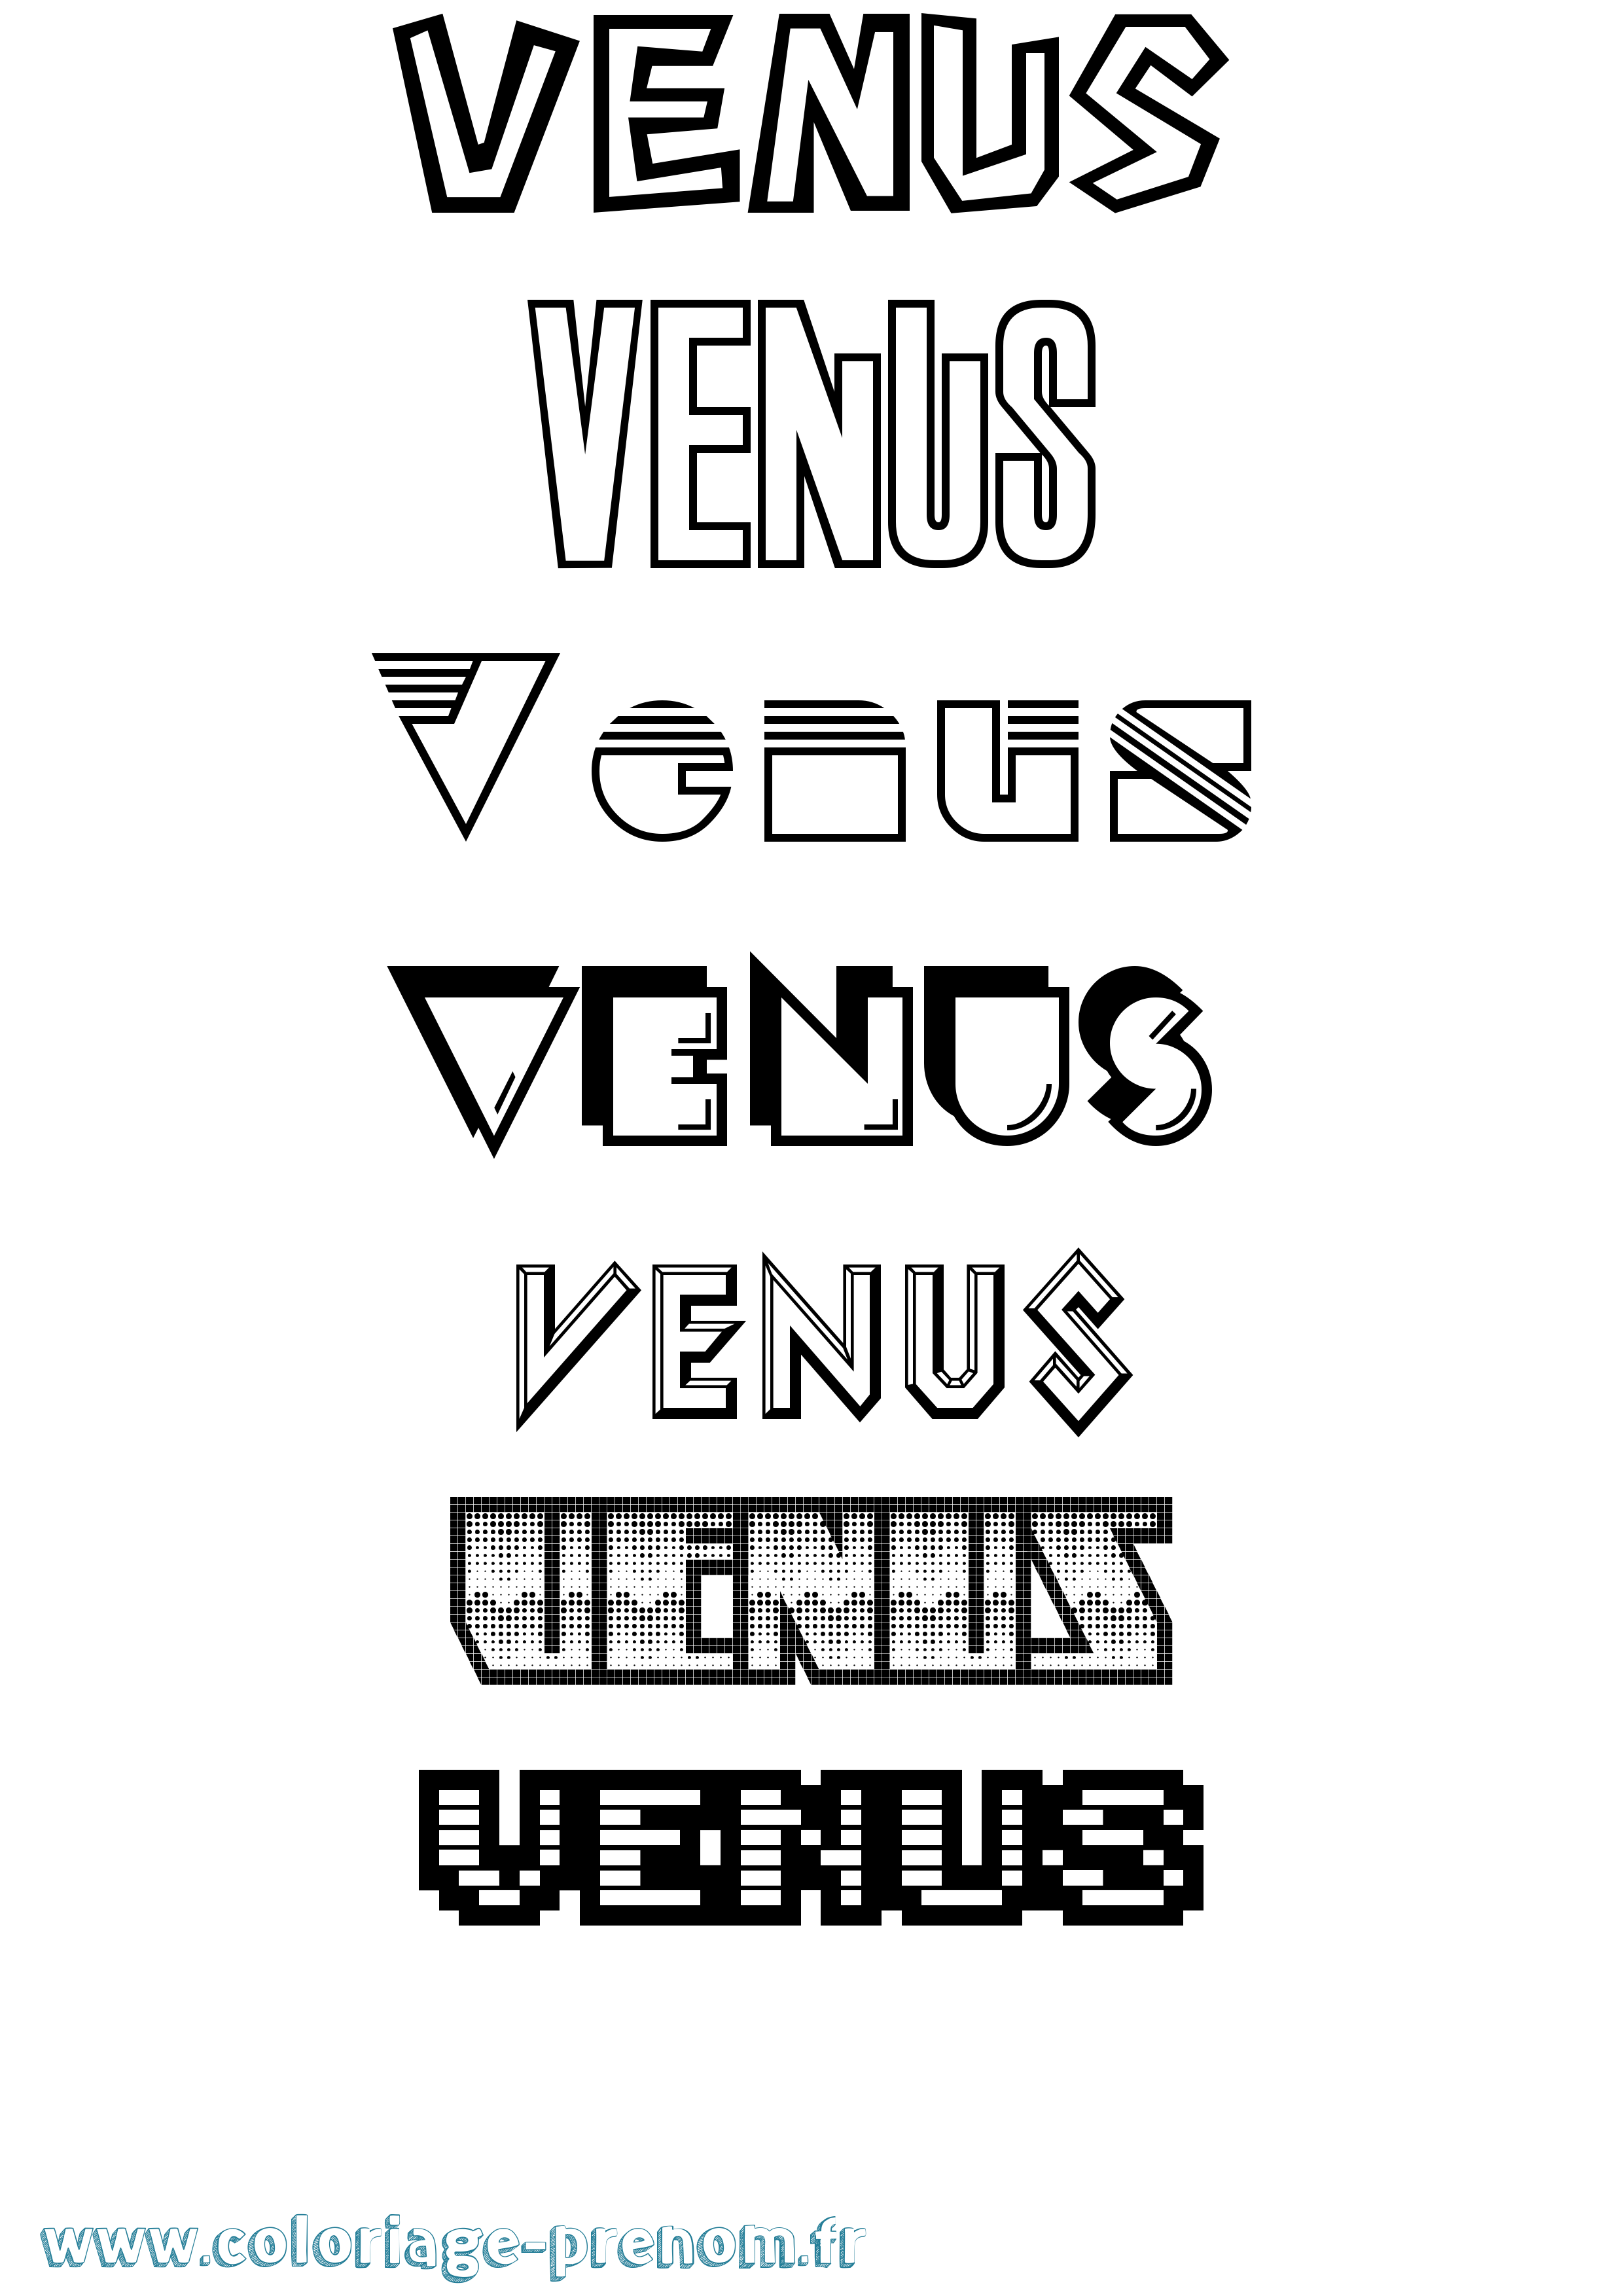 Coloriage prénom Venus Jeux Vidéos